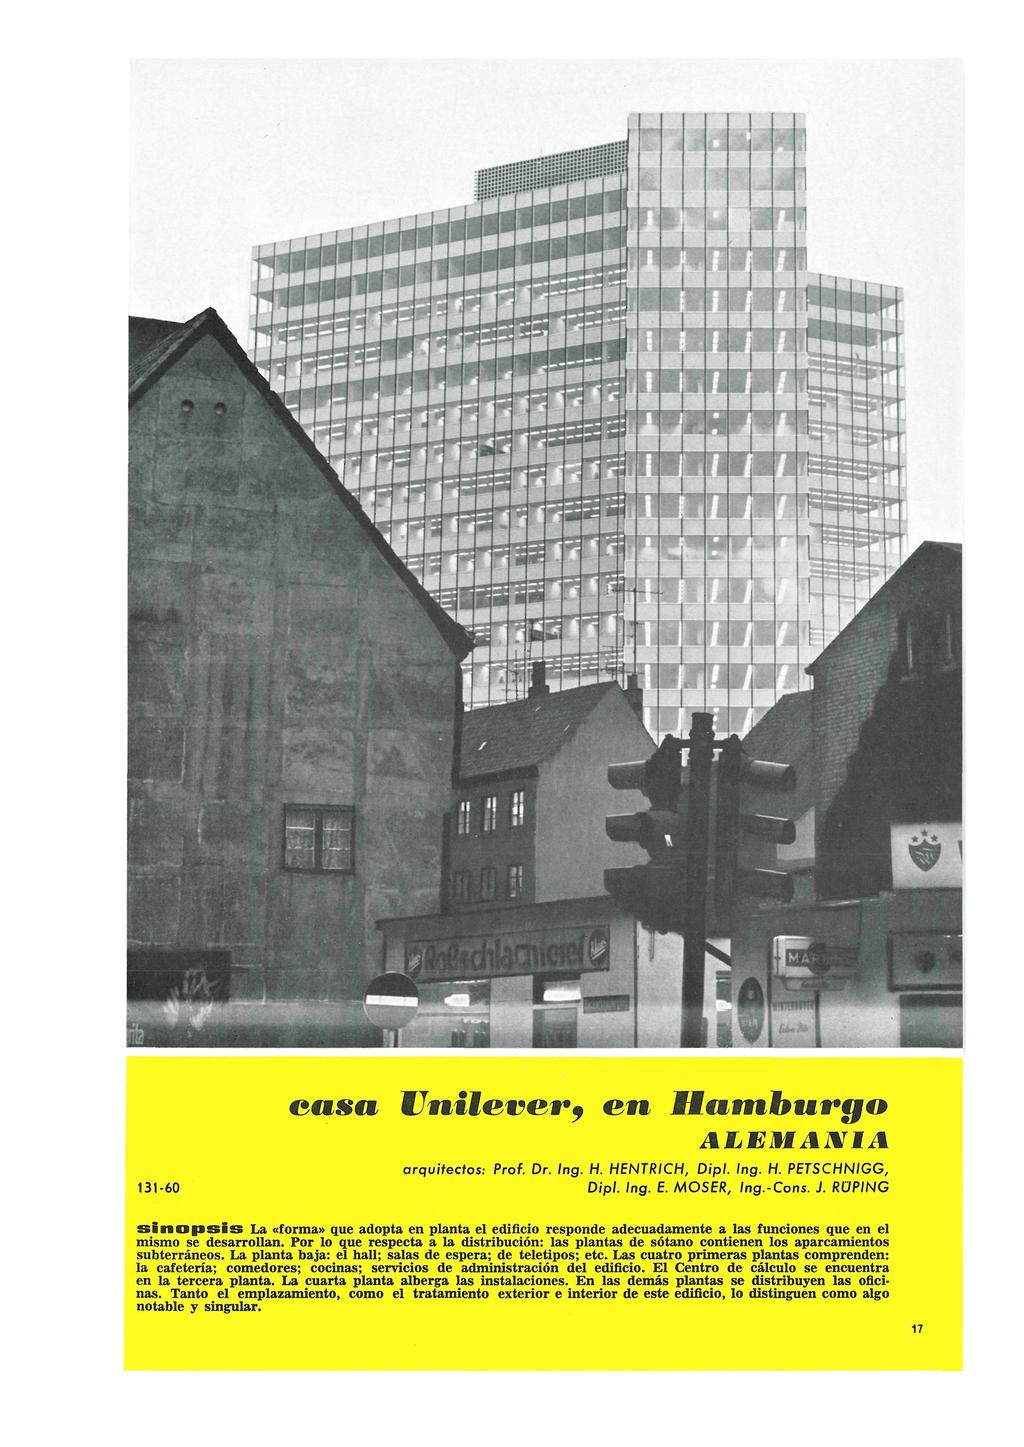 Informes de la Construcción Vol. 21, nº 203 Agosto y septiembre de 1968 ALEMAJWIA arquitectos: 131-60 Prof. Dr. Ing. H. HENTRICH, Dip!. Ing. H. PETSCHNIGG, Dipl. Ing. E. MOSER, Ing.-Cons. J.